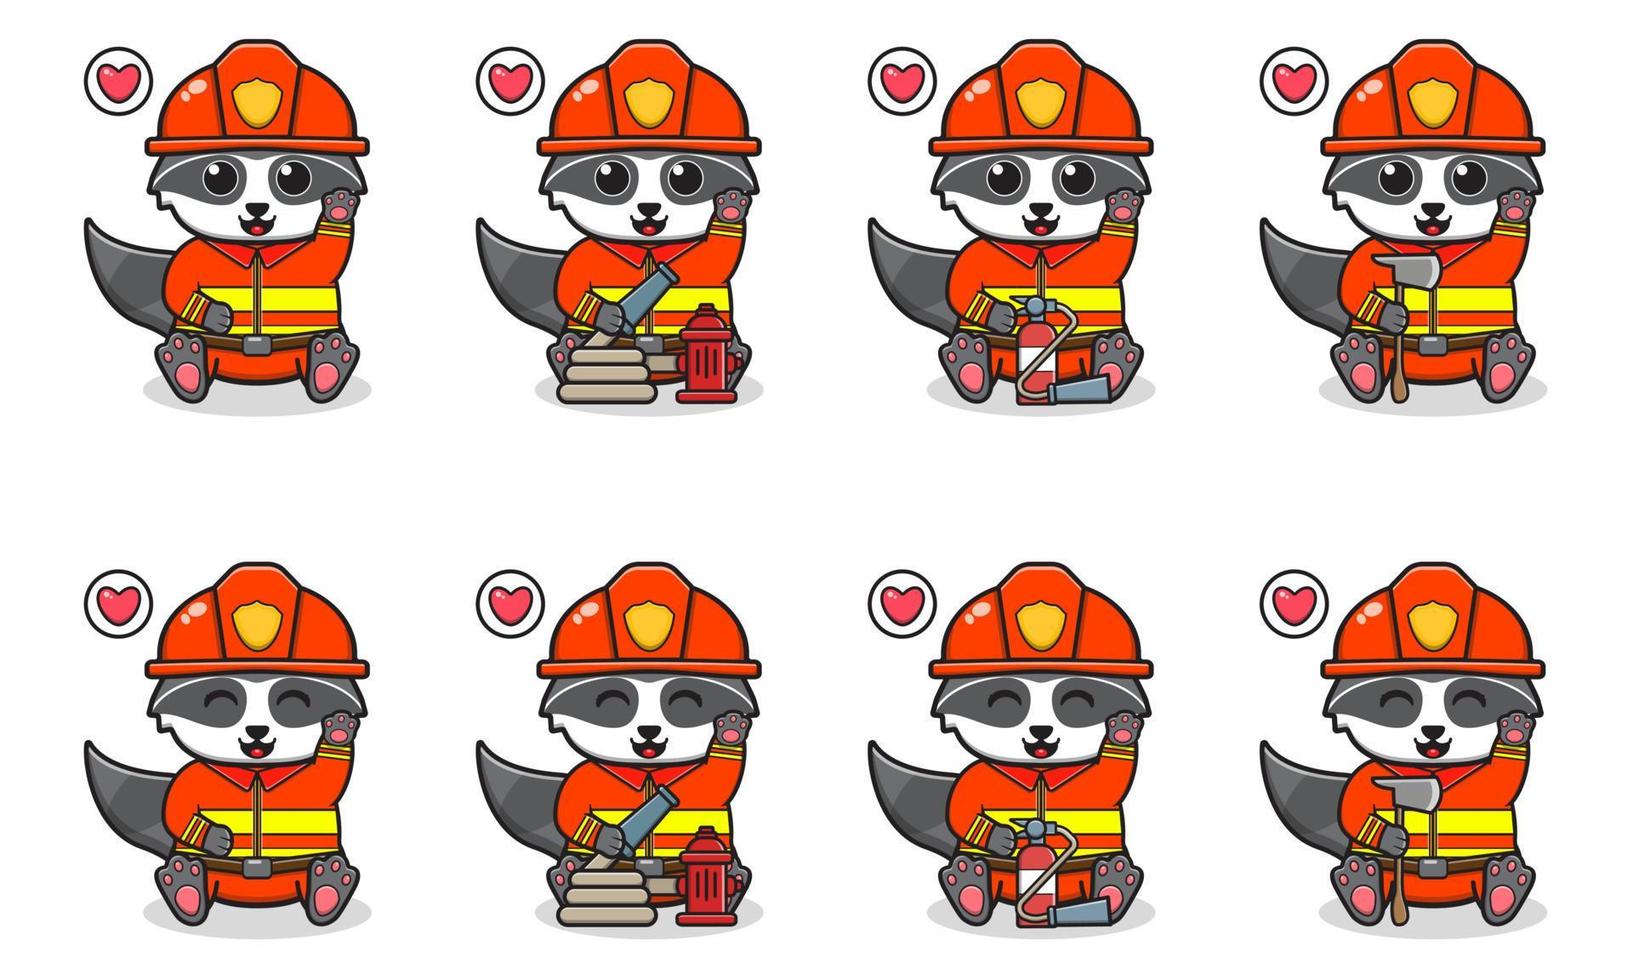 vektor illustration av söt sittande tvättbjörn tecknad med brandman kostym och hand upp pose.